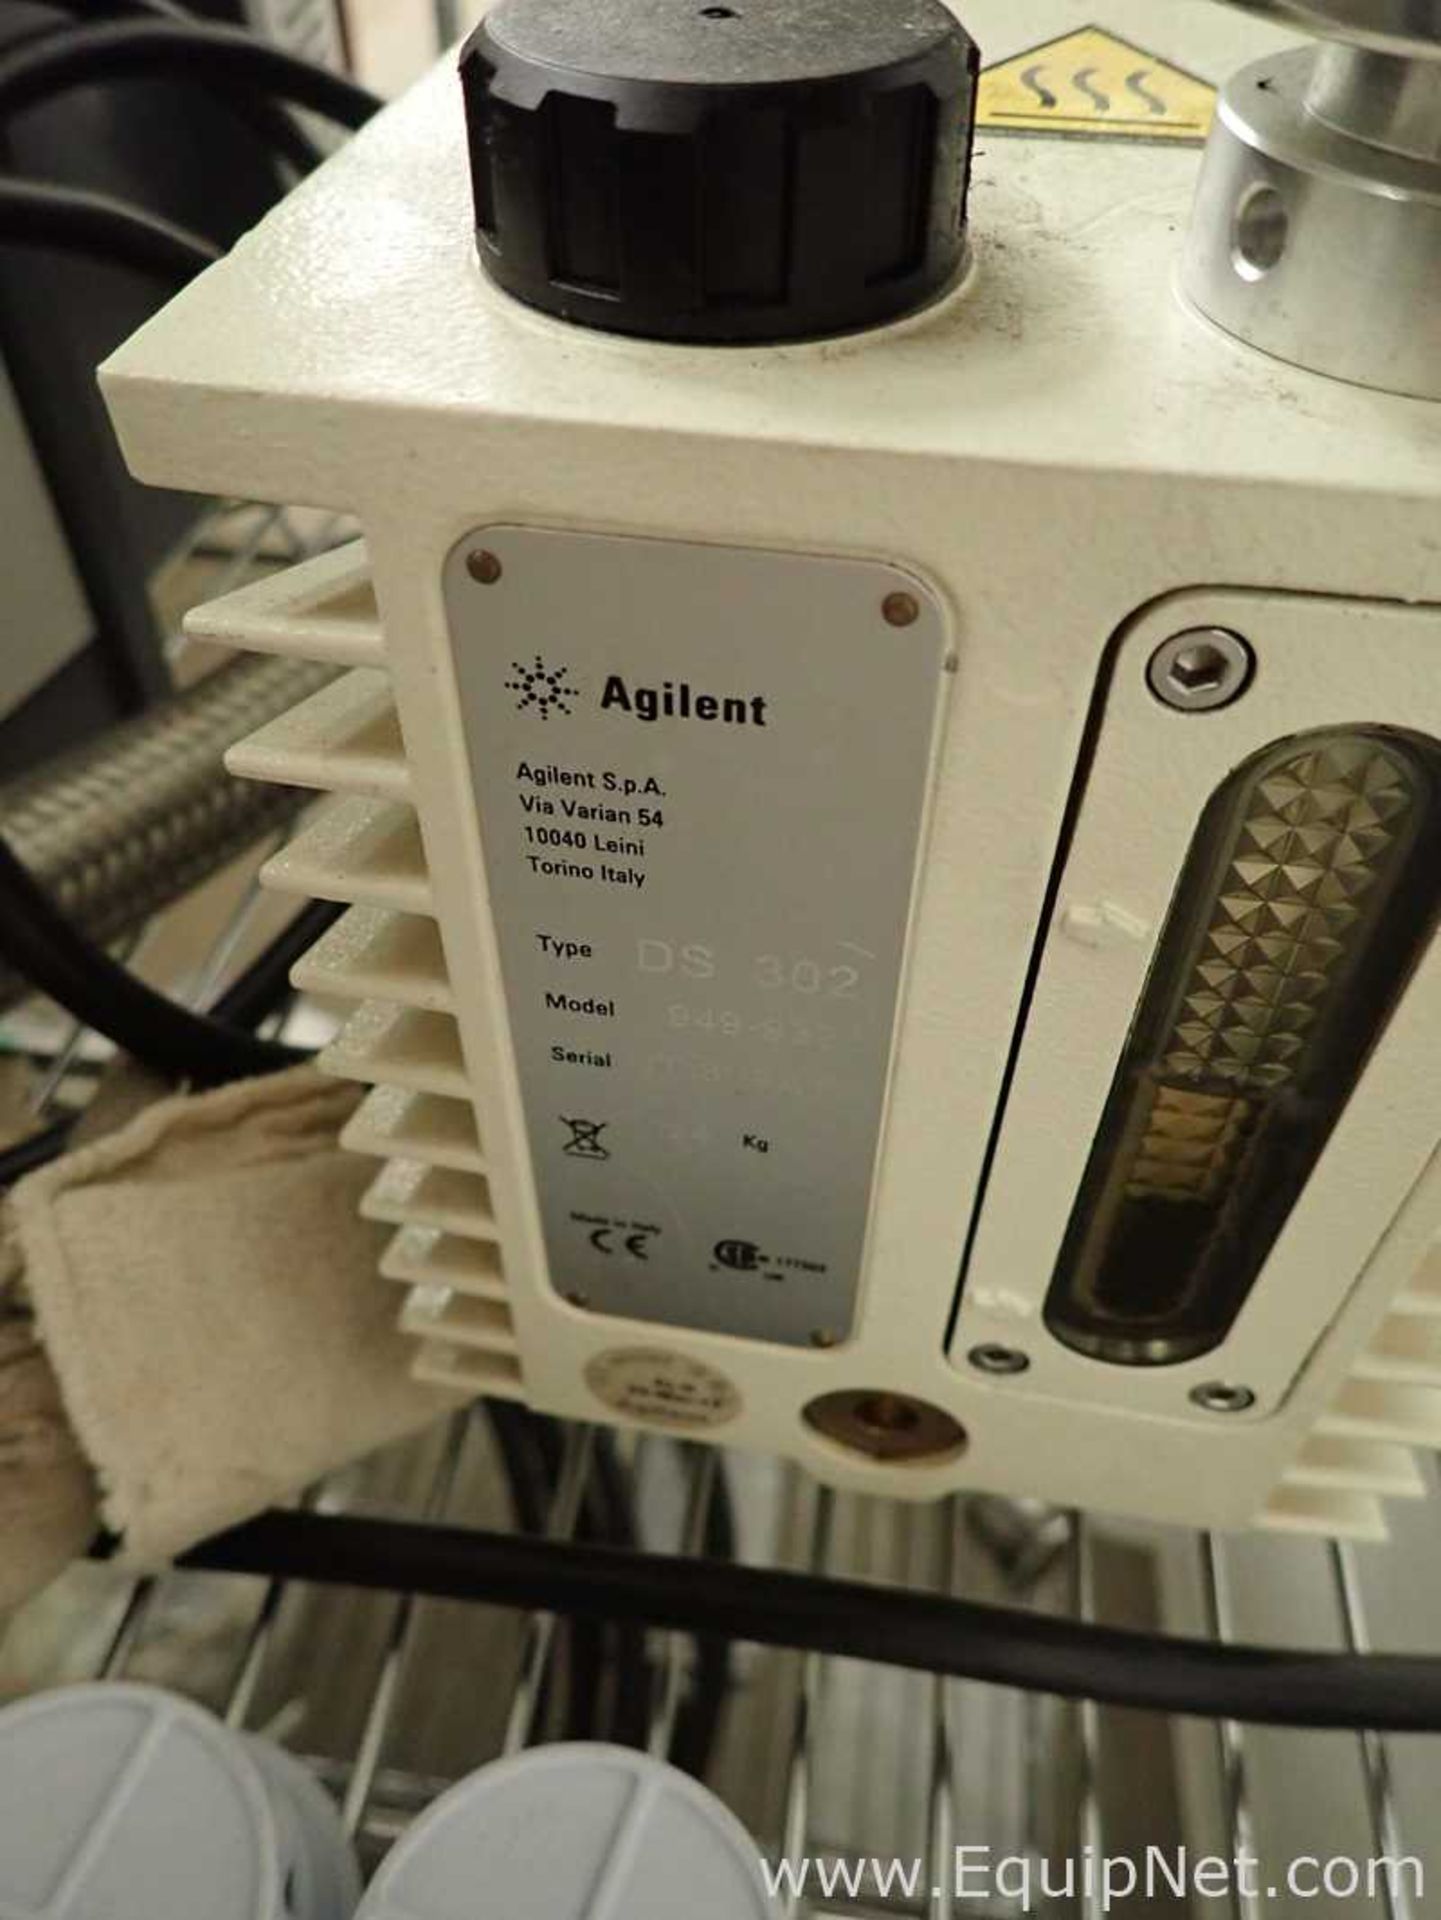 Agilent VSBR151 Leak Detector with DS 302 Vacuum Pump - Image 8 of 8